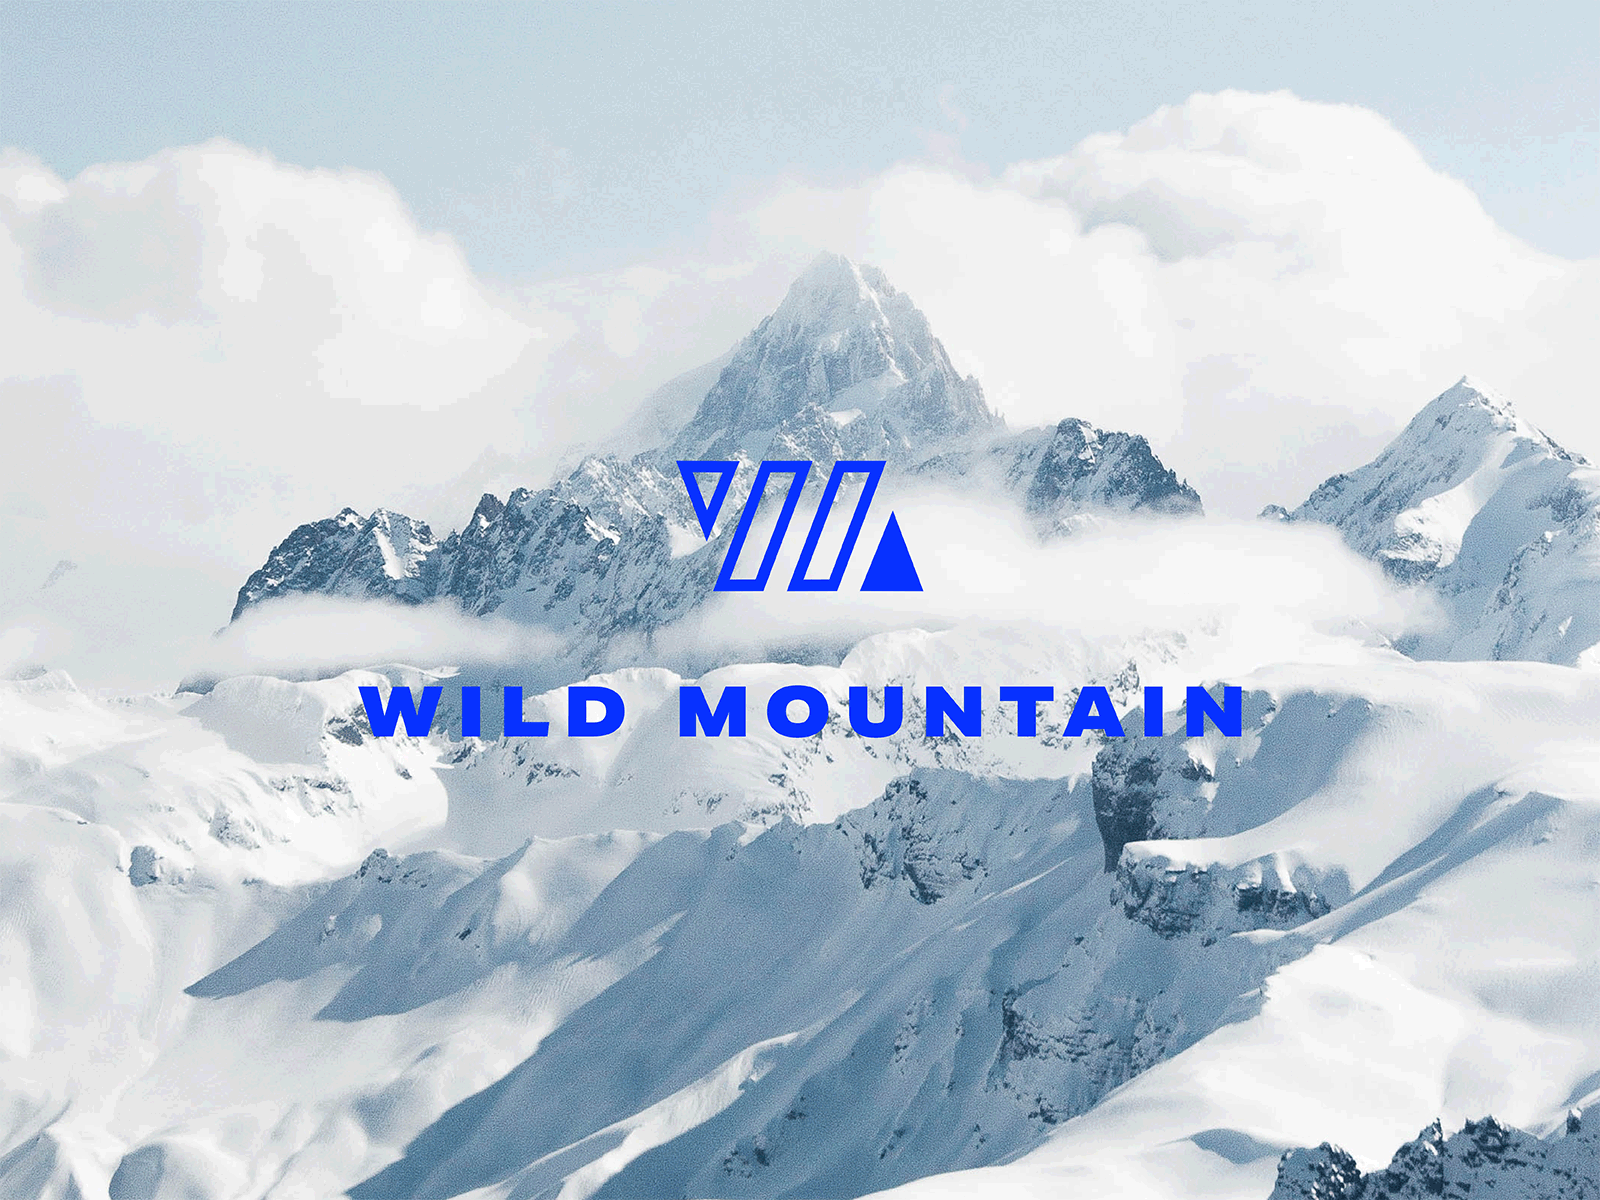 Wild Mountain branding design geometric icon illustration logo mountain